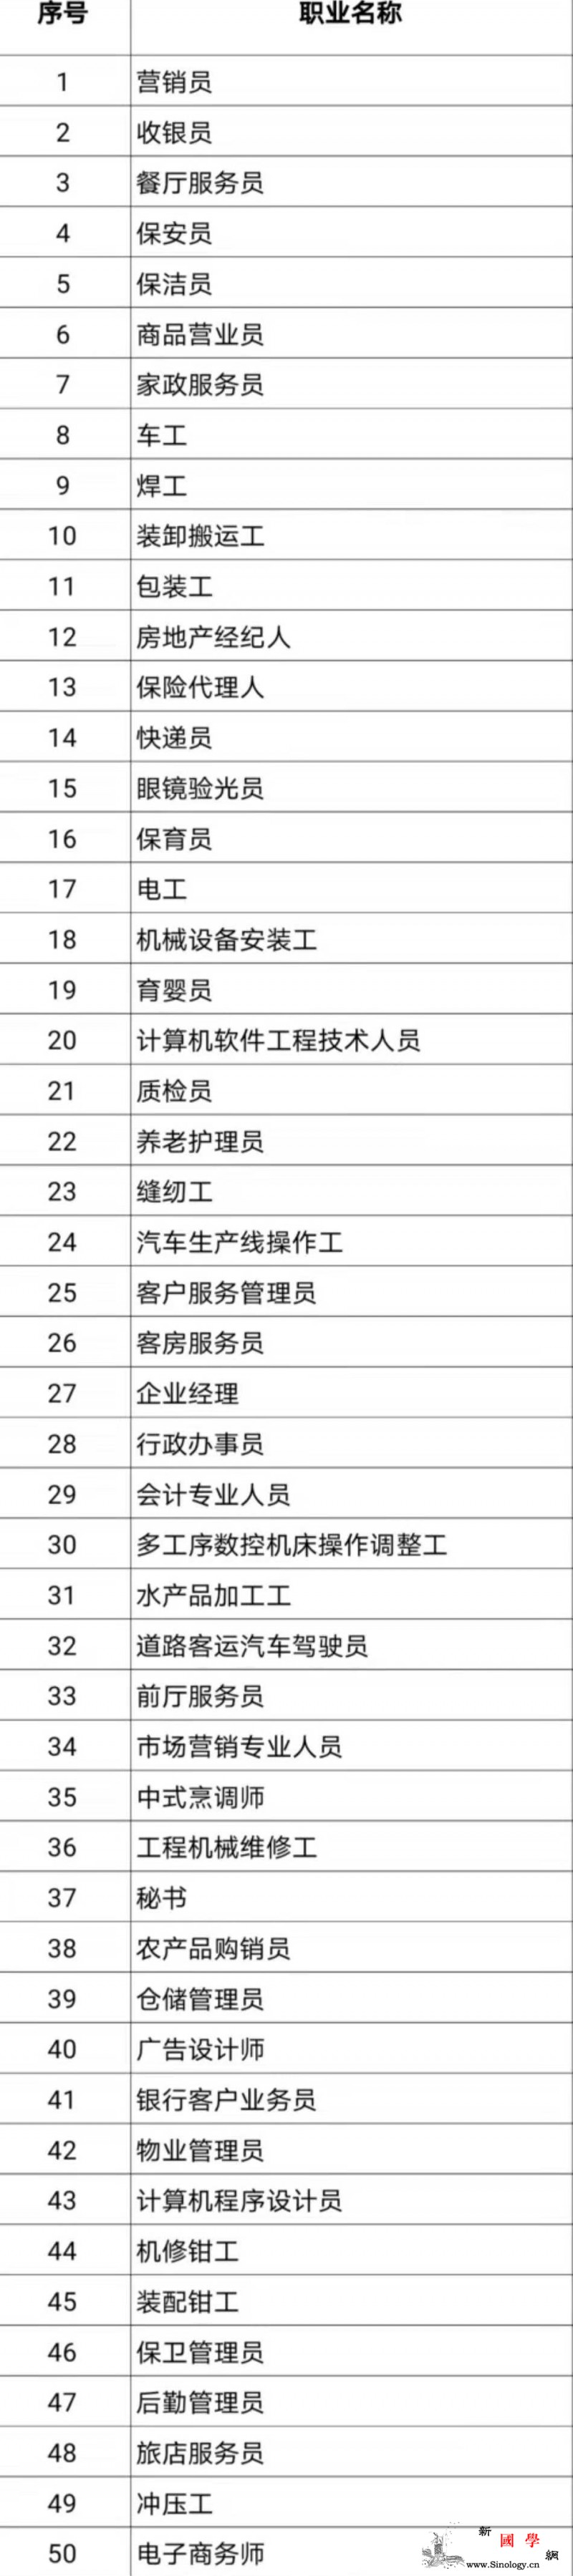 中国官方发布100个短缺职业排行营销_短缺-排行-职业-